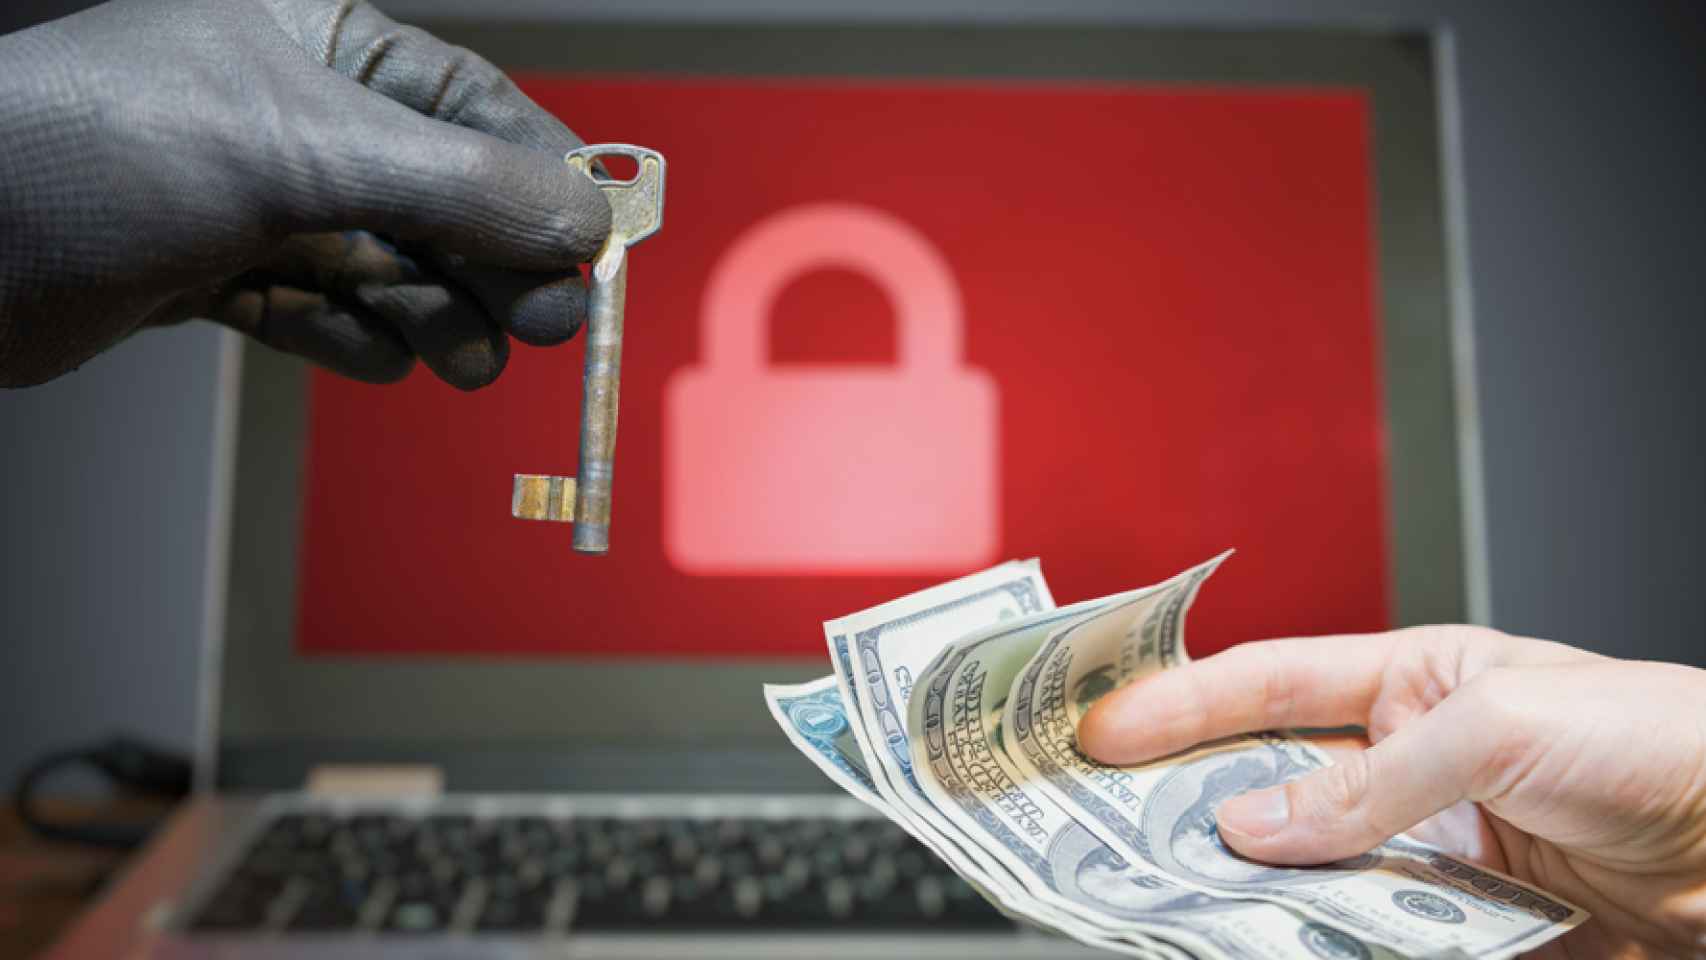 El negocio del ransomware consiste en cobrar por la clave de cifrado